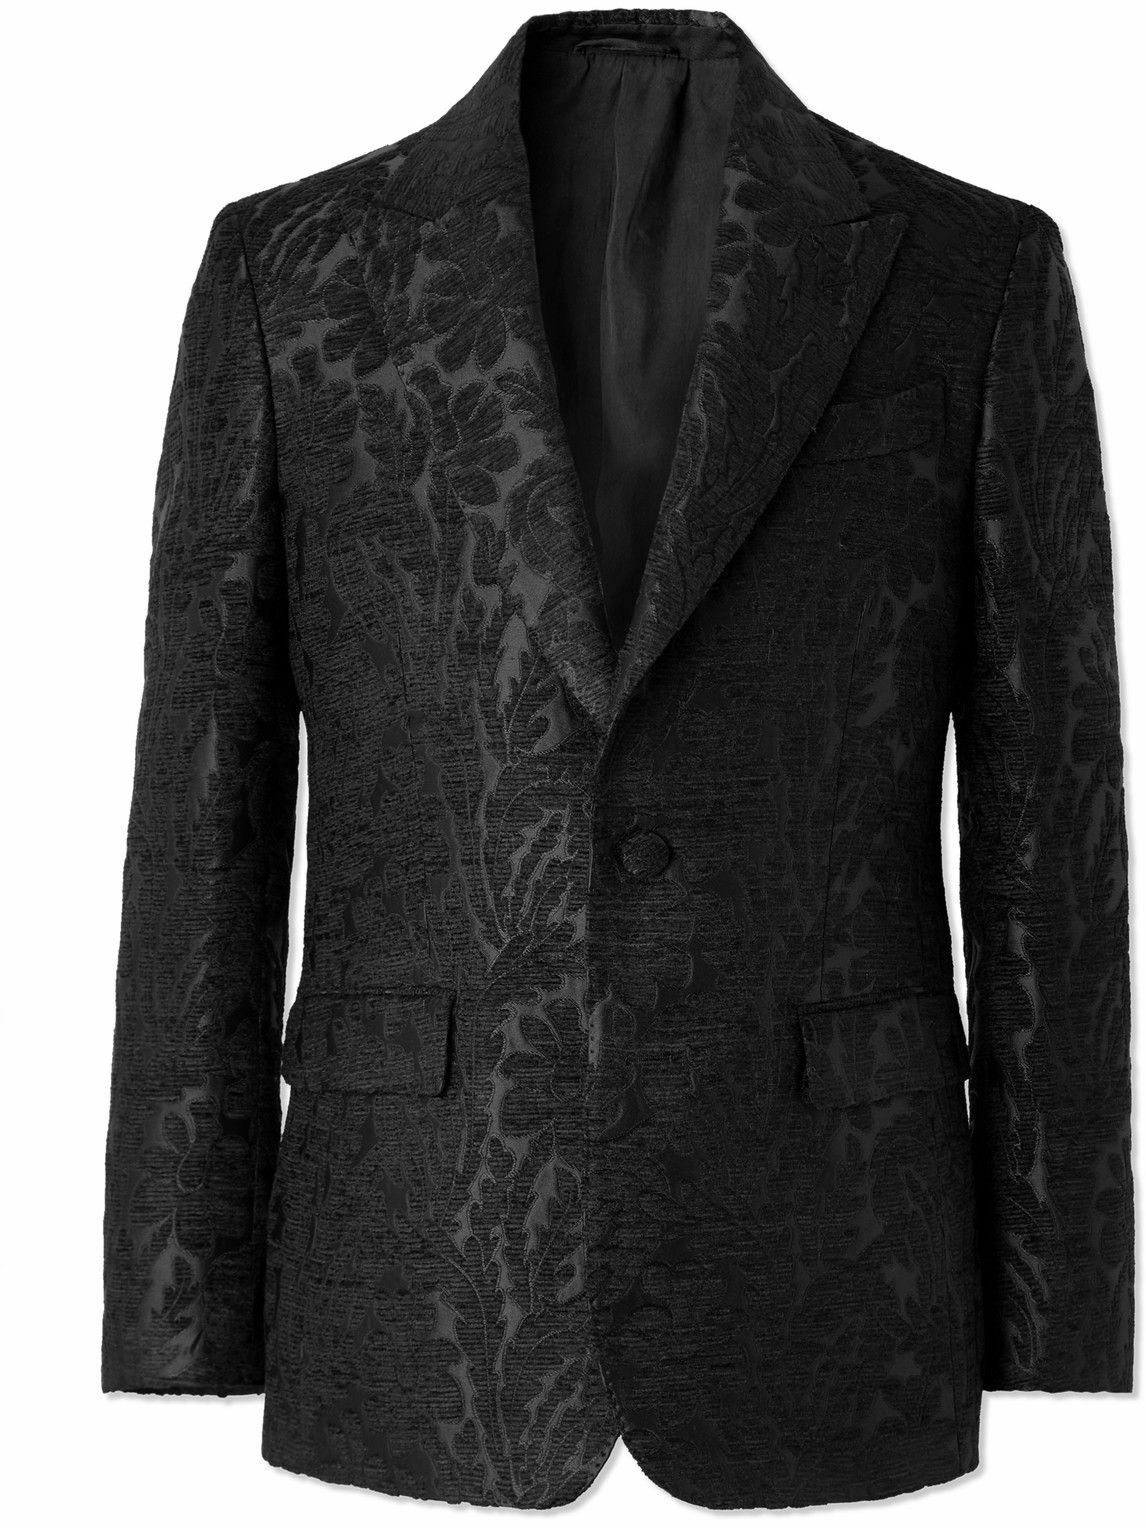 Etro - Paisley-Jacquard Woven Tuxedo Jacket - Black Etro